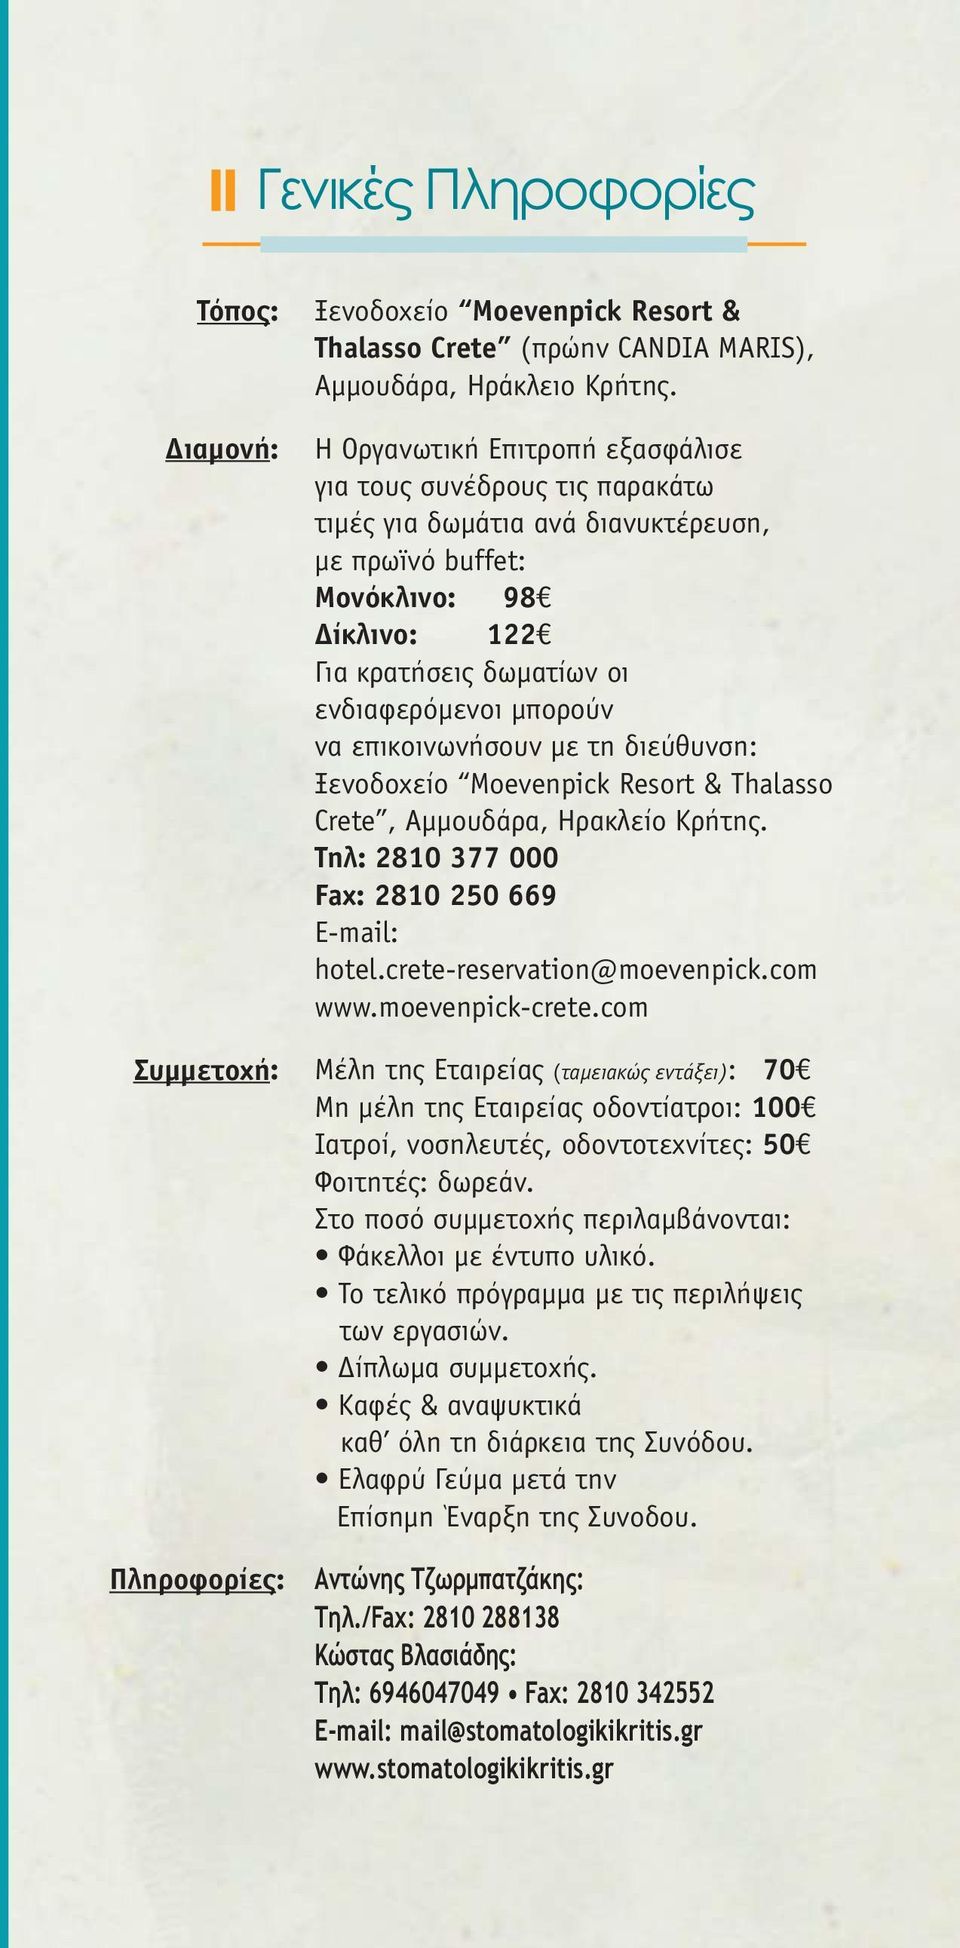 επικοινωνήσουν µε τη διεύθυνση: Ξενοδοχείο Moevenpick Resort & Thalasso Crete, Aµµουδάρα, Ηρακλείο Κρήτης. Τηλ: 2810 377 000 Fax: 2810 250 669 E-mail: hotel.crete-reservation@moevenpick.com www.